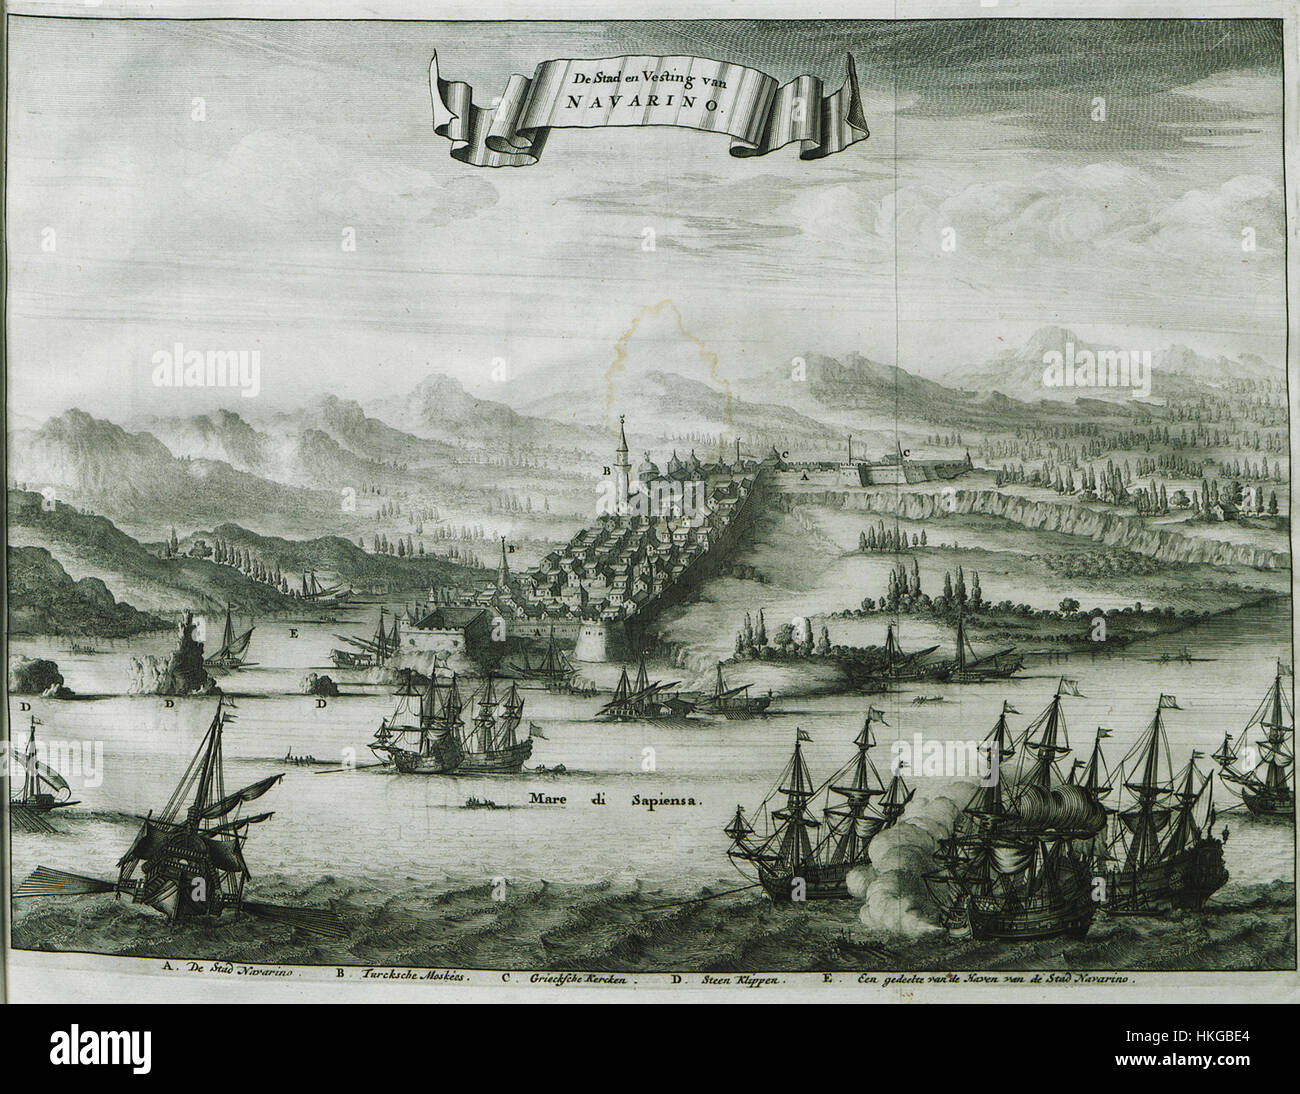 De Stad en Vesting van Navarino   Dapper Olfert   1688 Stock Photo